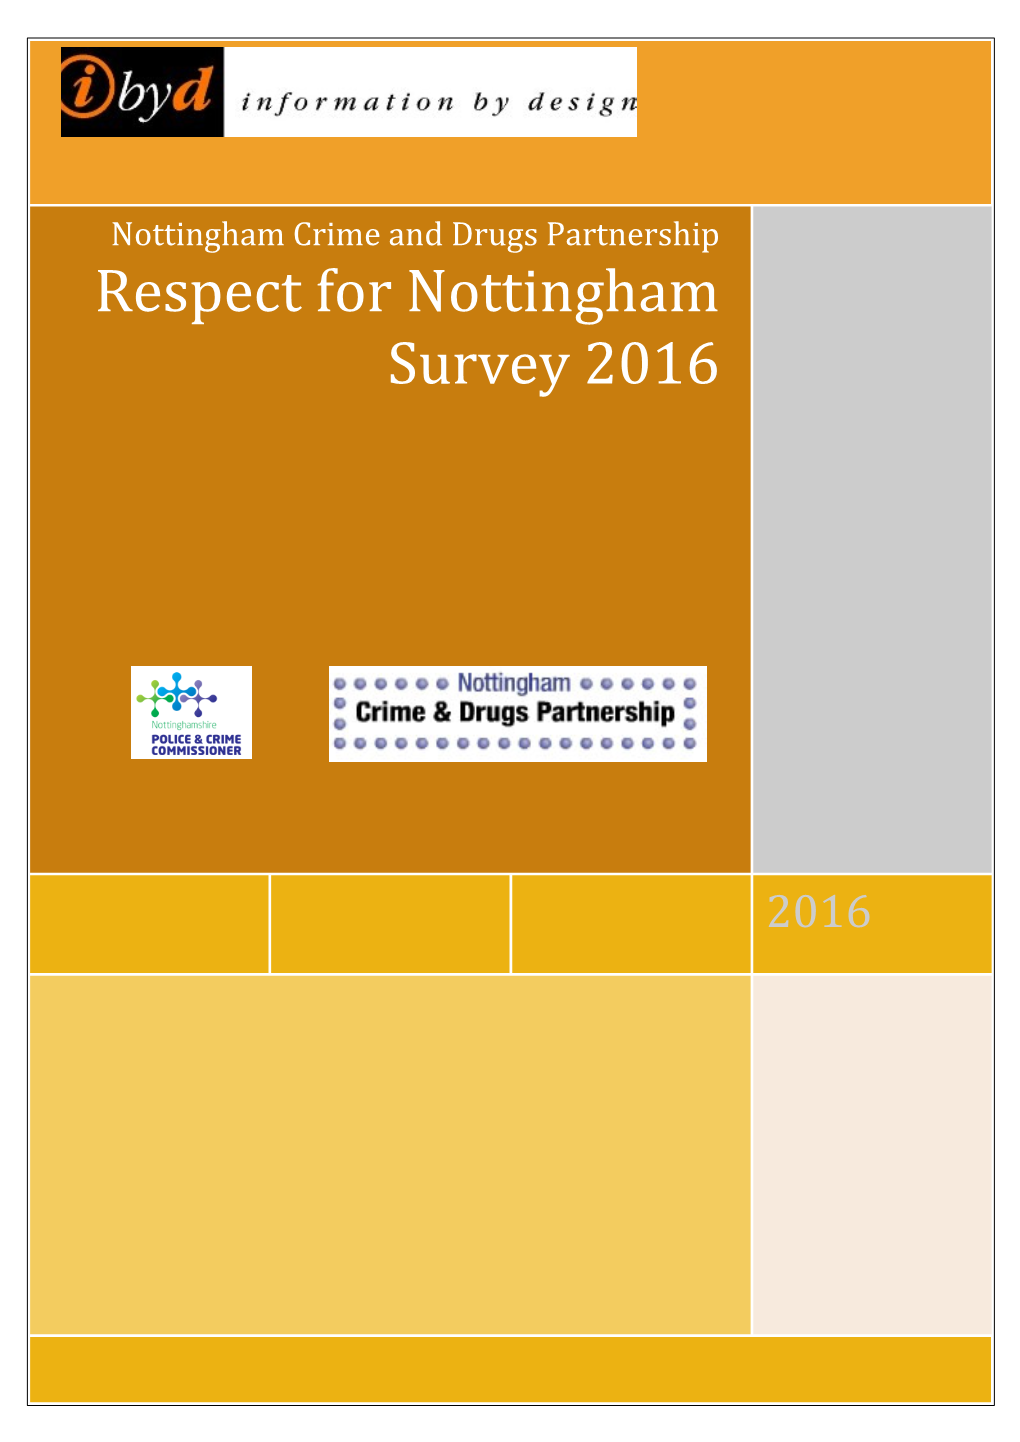 Nottingham Crime and Drugs Partnership Respect for Nottingham Survey 2016